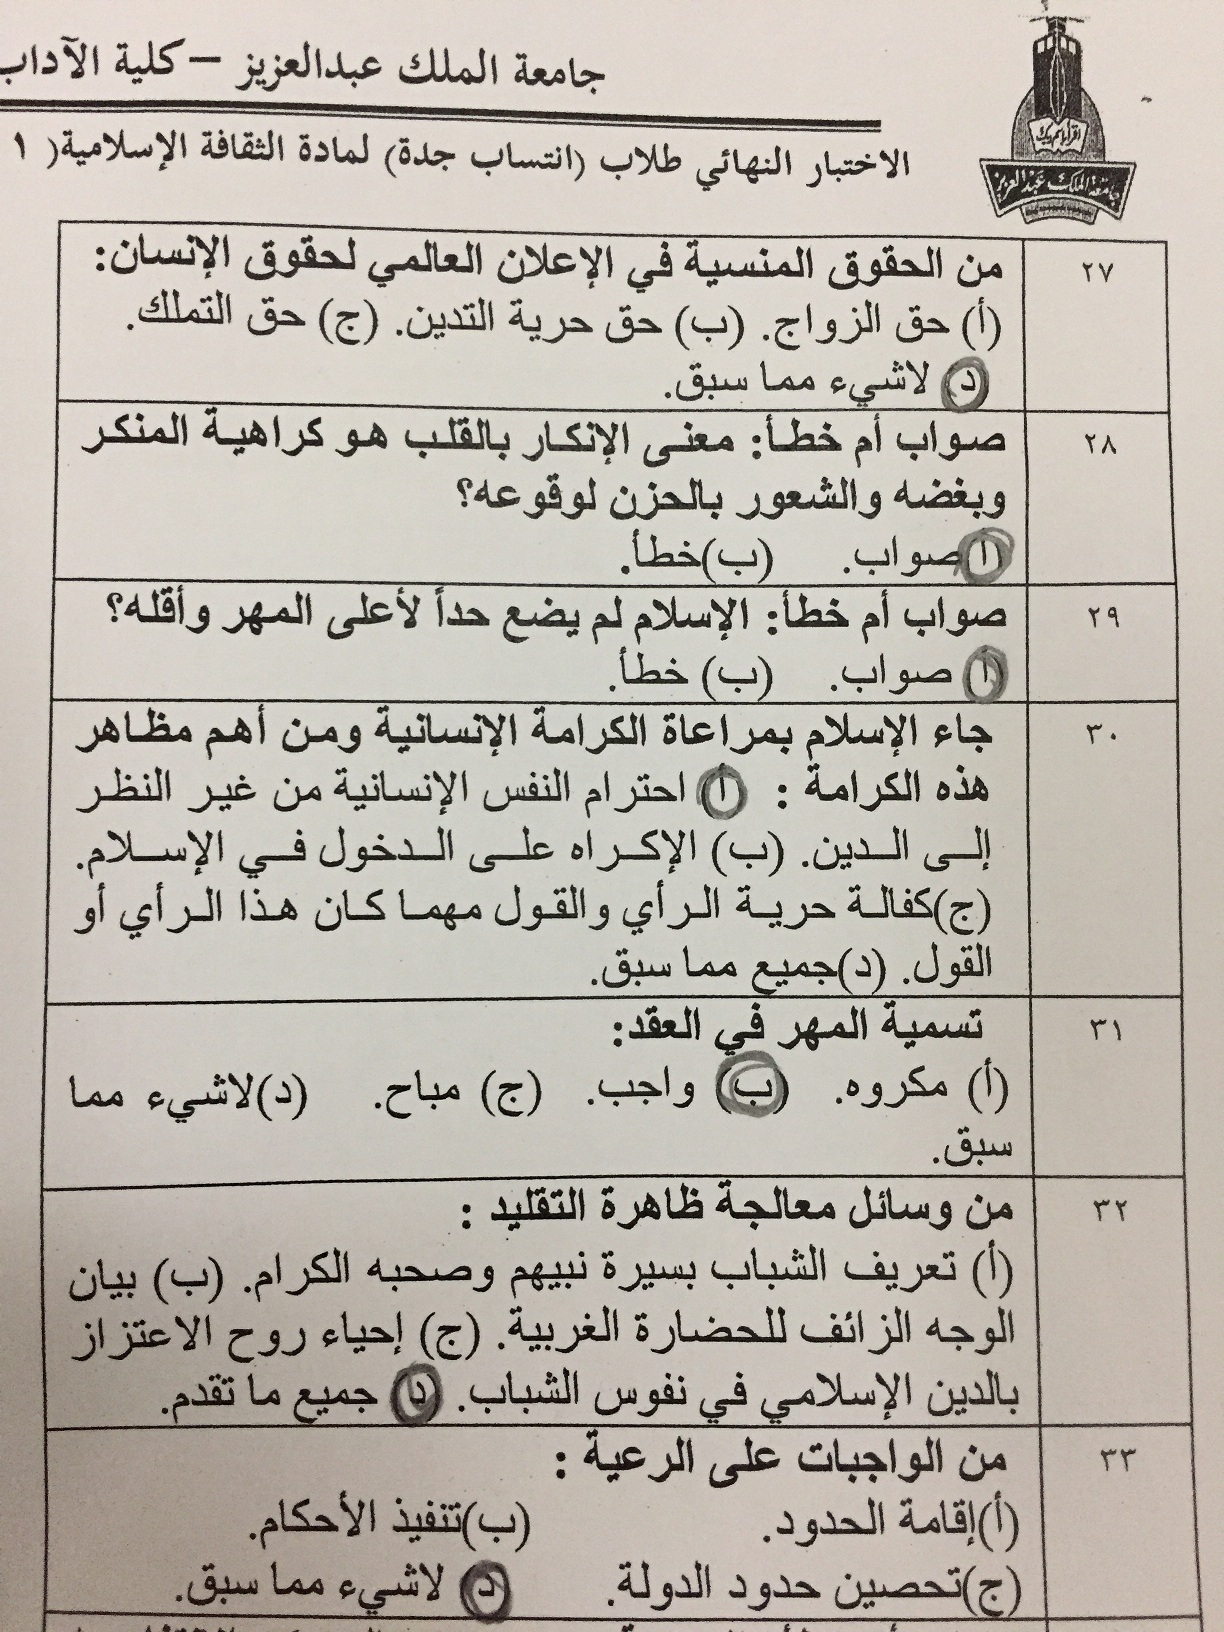 اسئلة الثقافة الإسلامية3 ISLS 301 الفصل الثاني 1438هـ